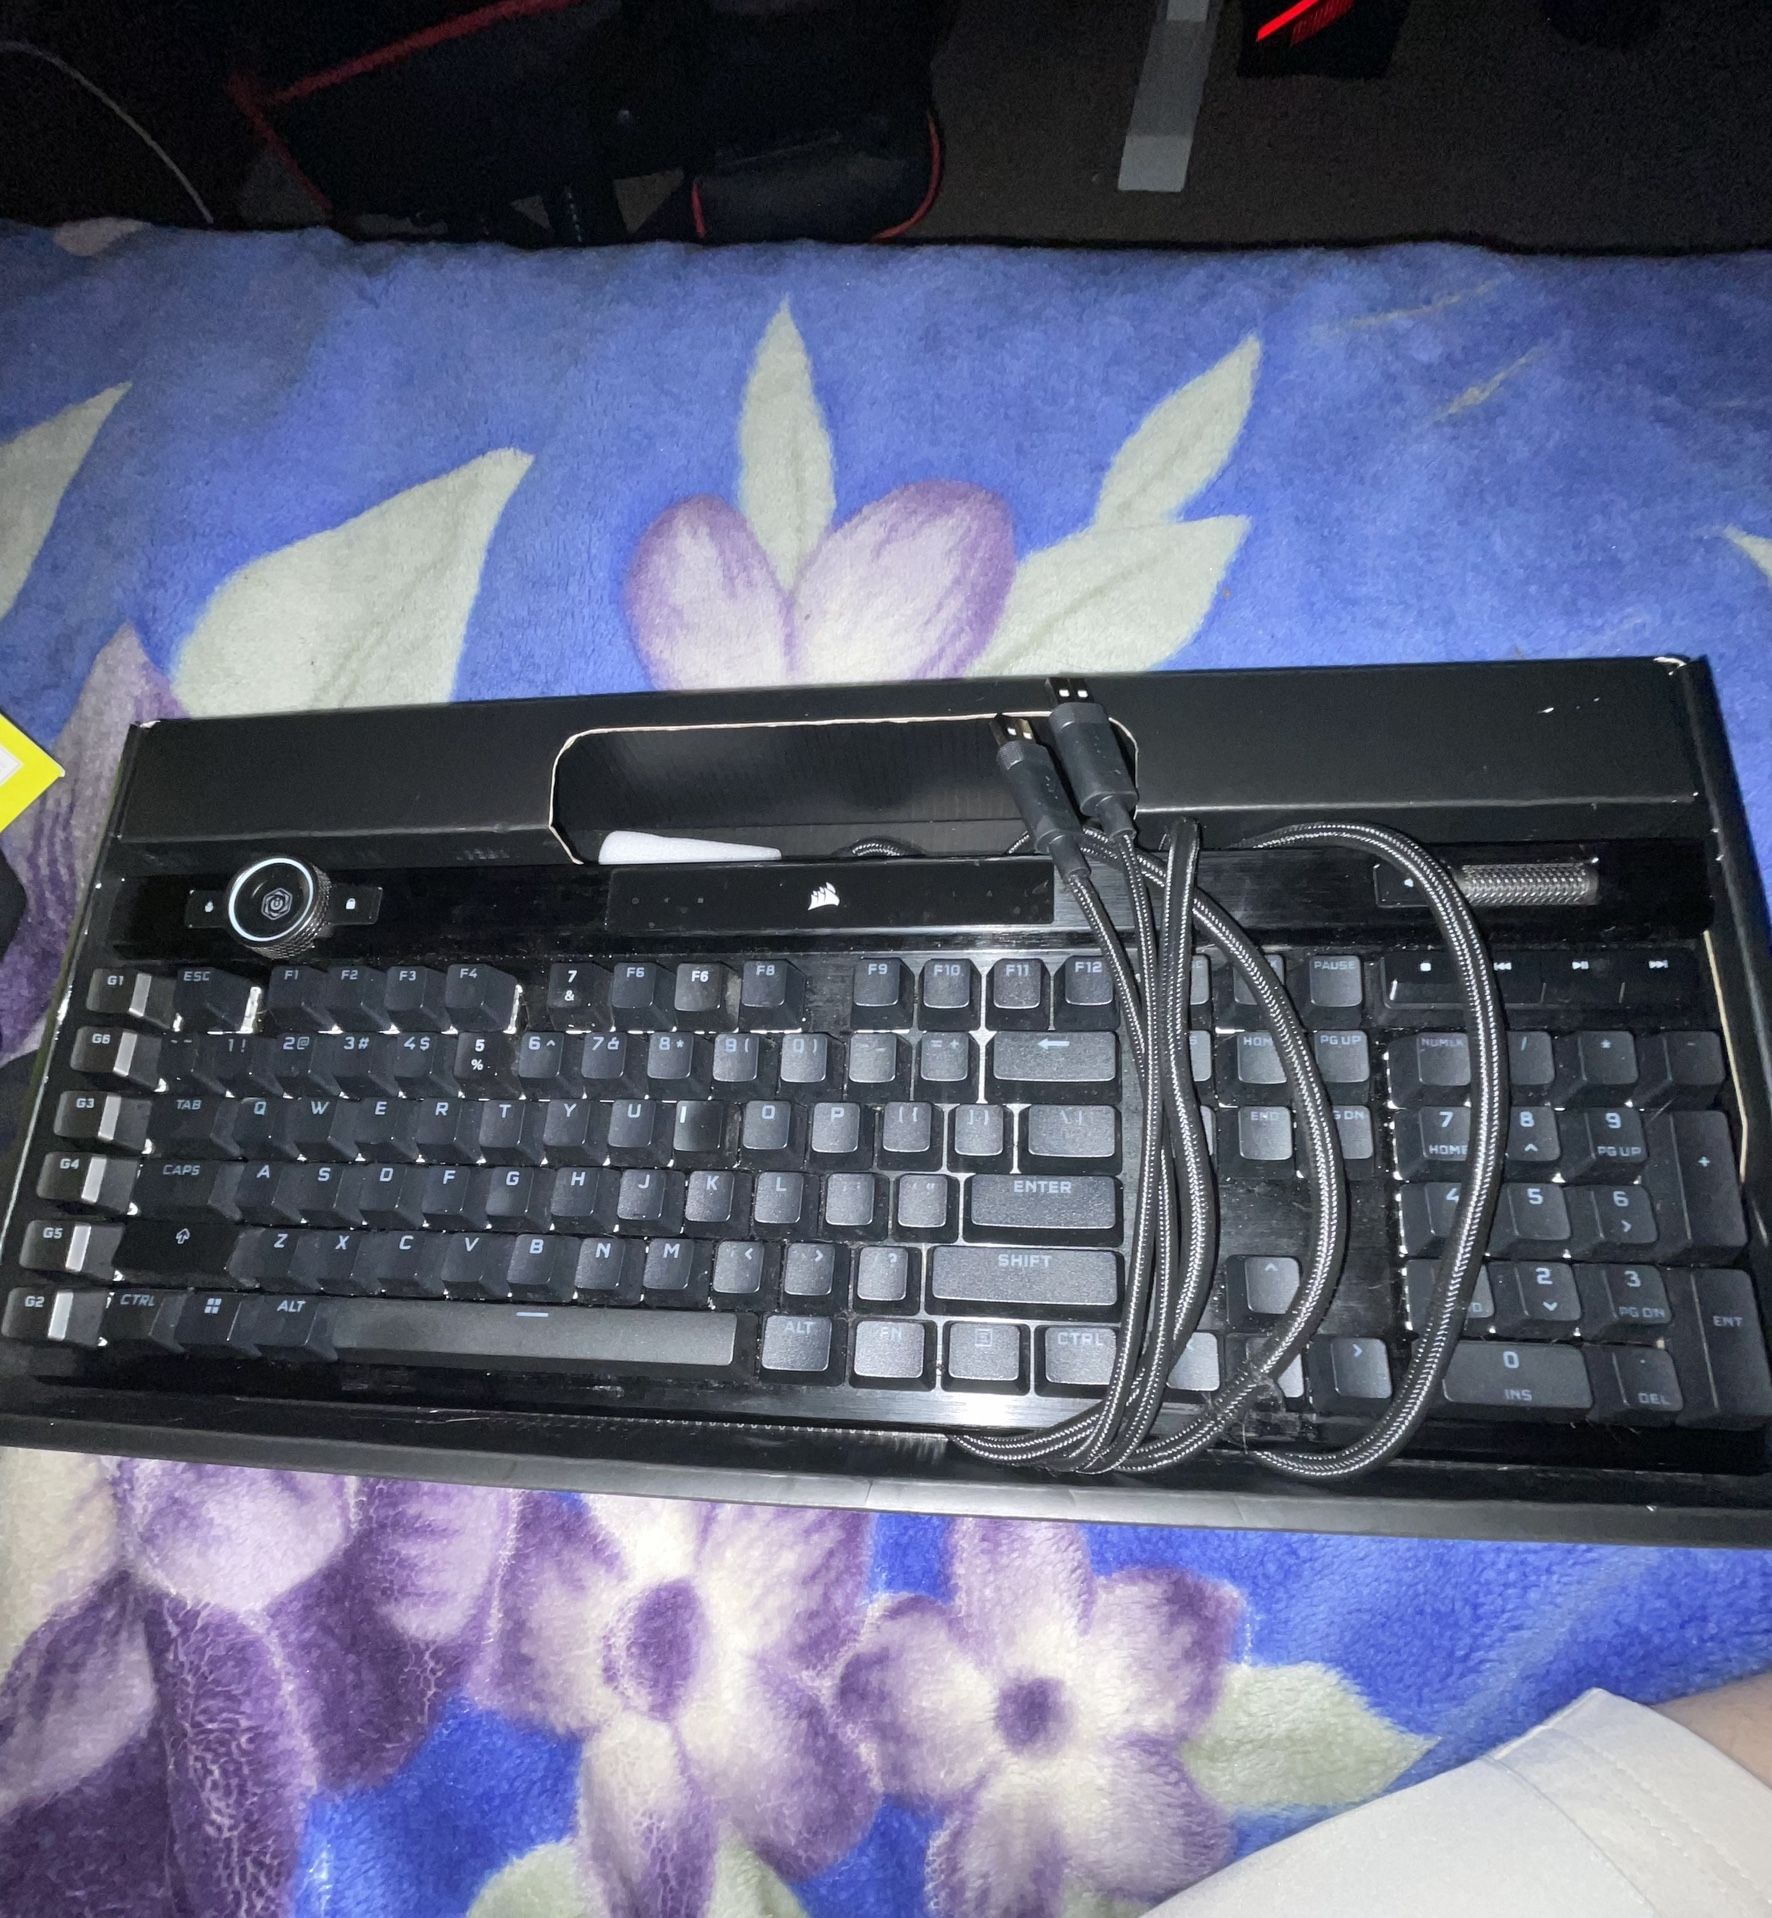 K100 rgb keyboard